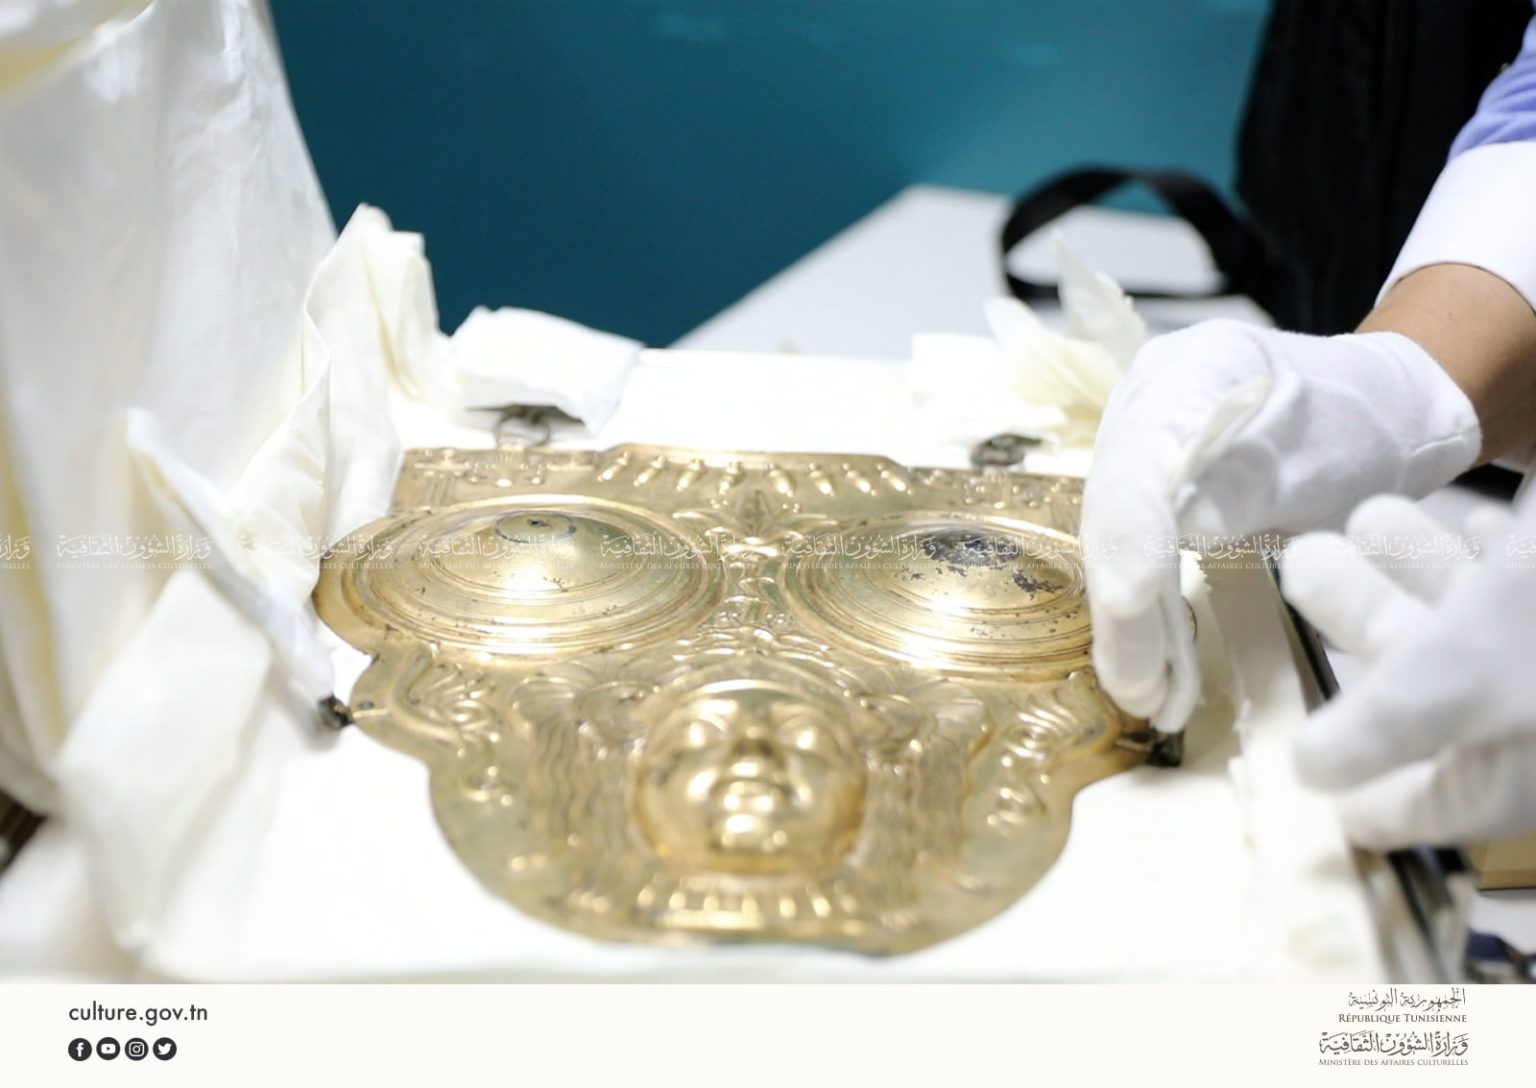 تونس تسترجع القطعة الأثرية درع حنبعل من إيطاليا